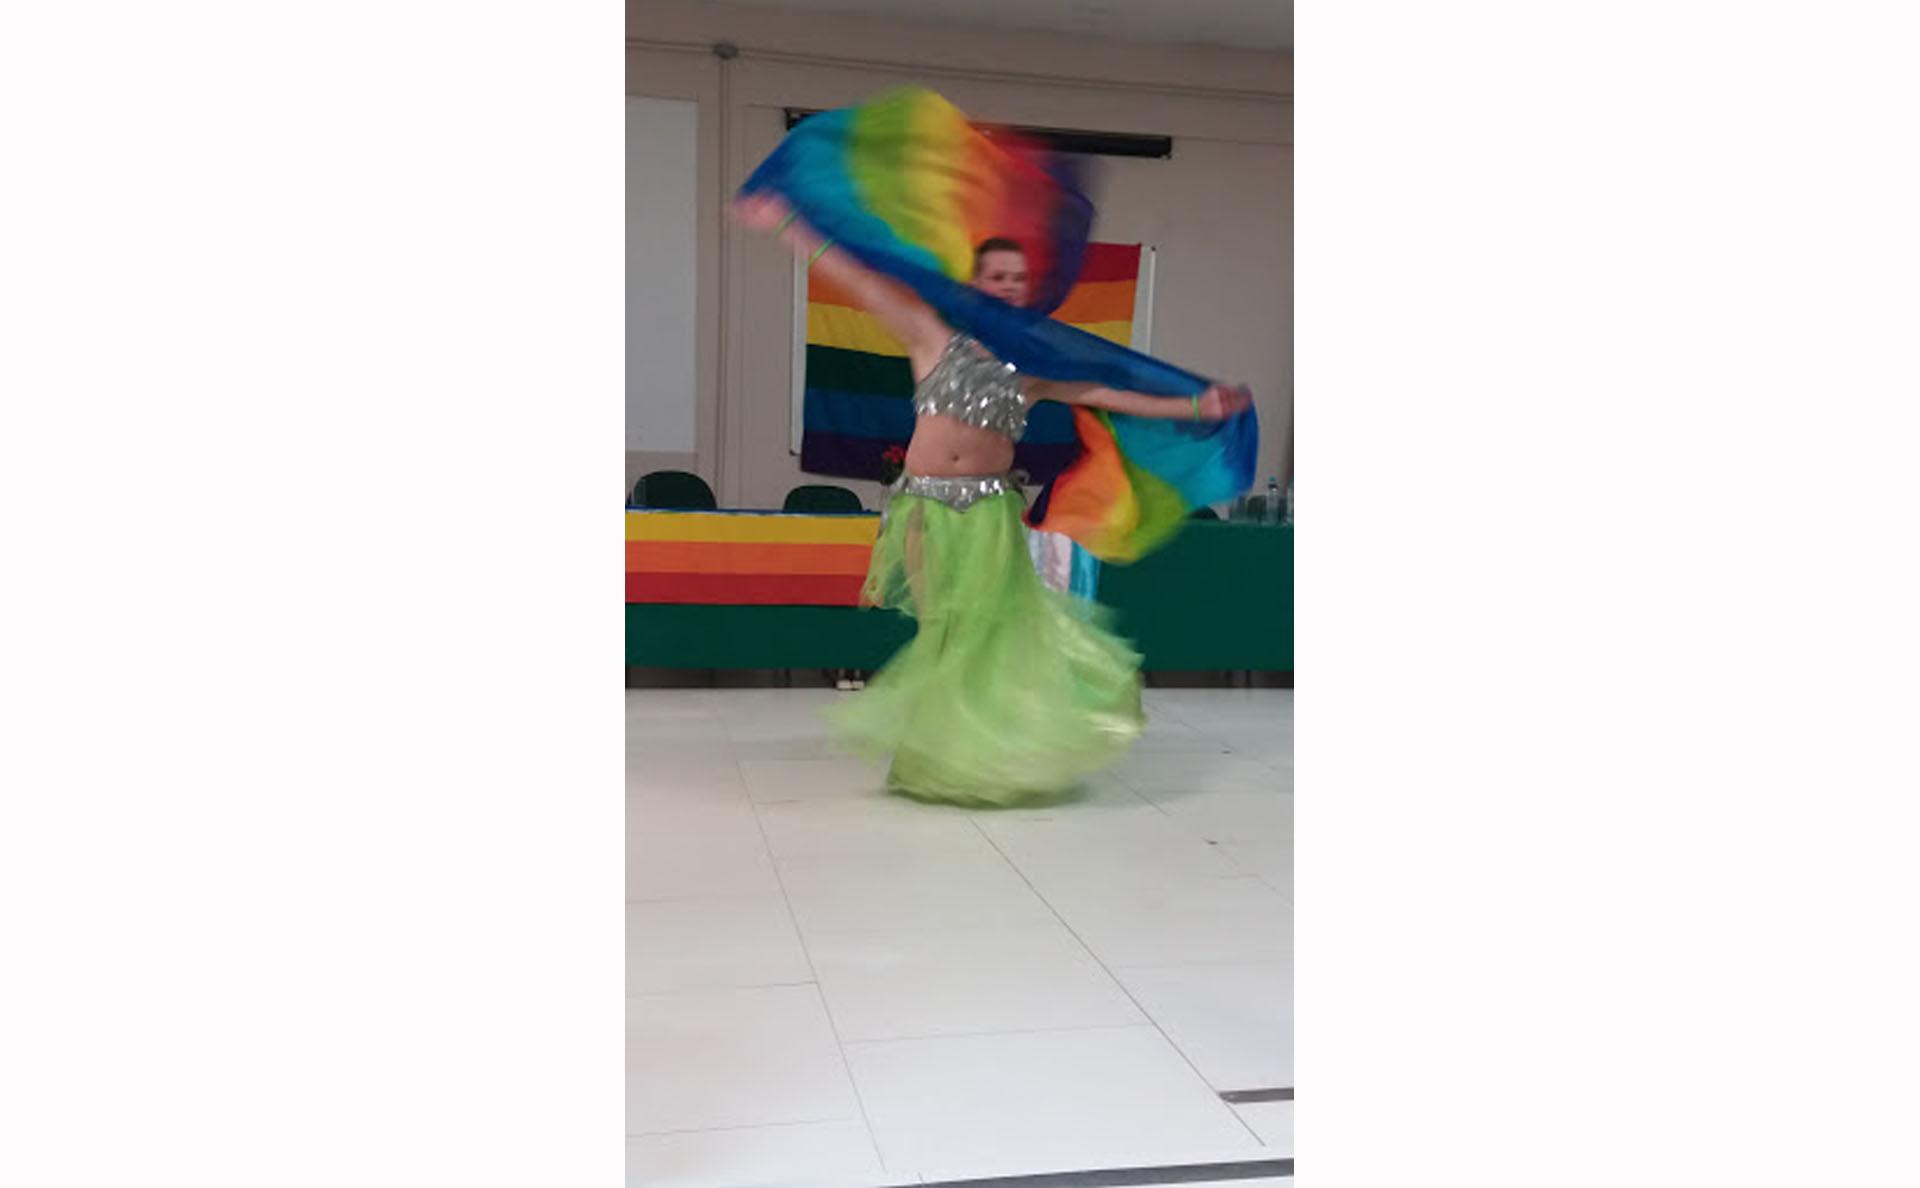 Bailarino apresenta coreografia de dança do ventre em frente à bandeira LGBTQ+